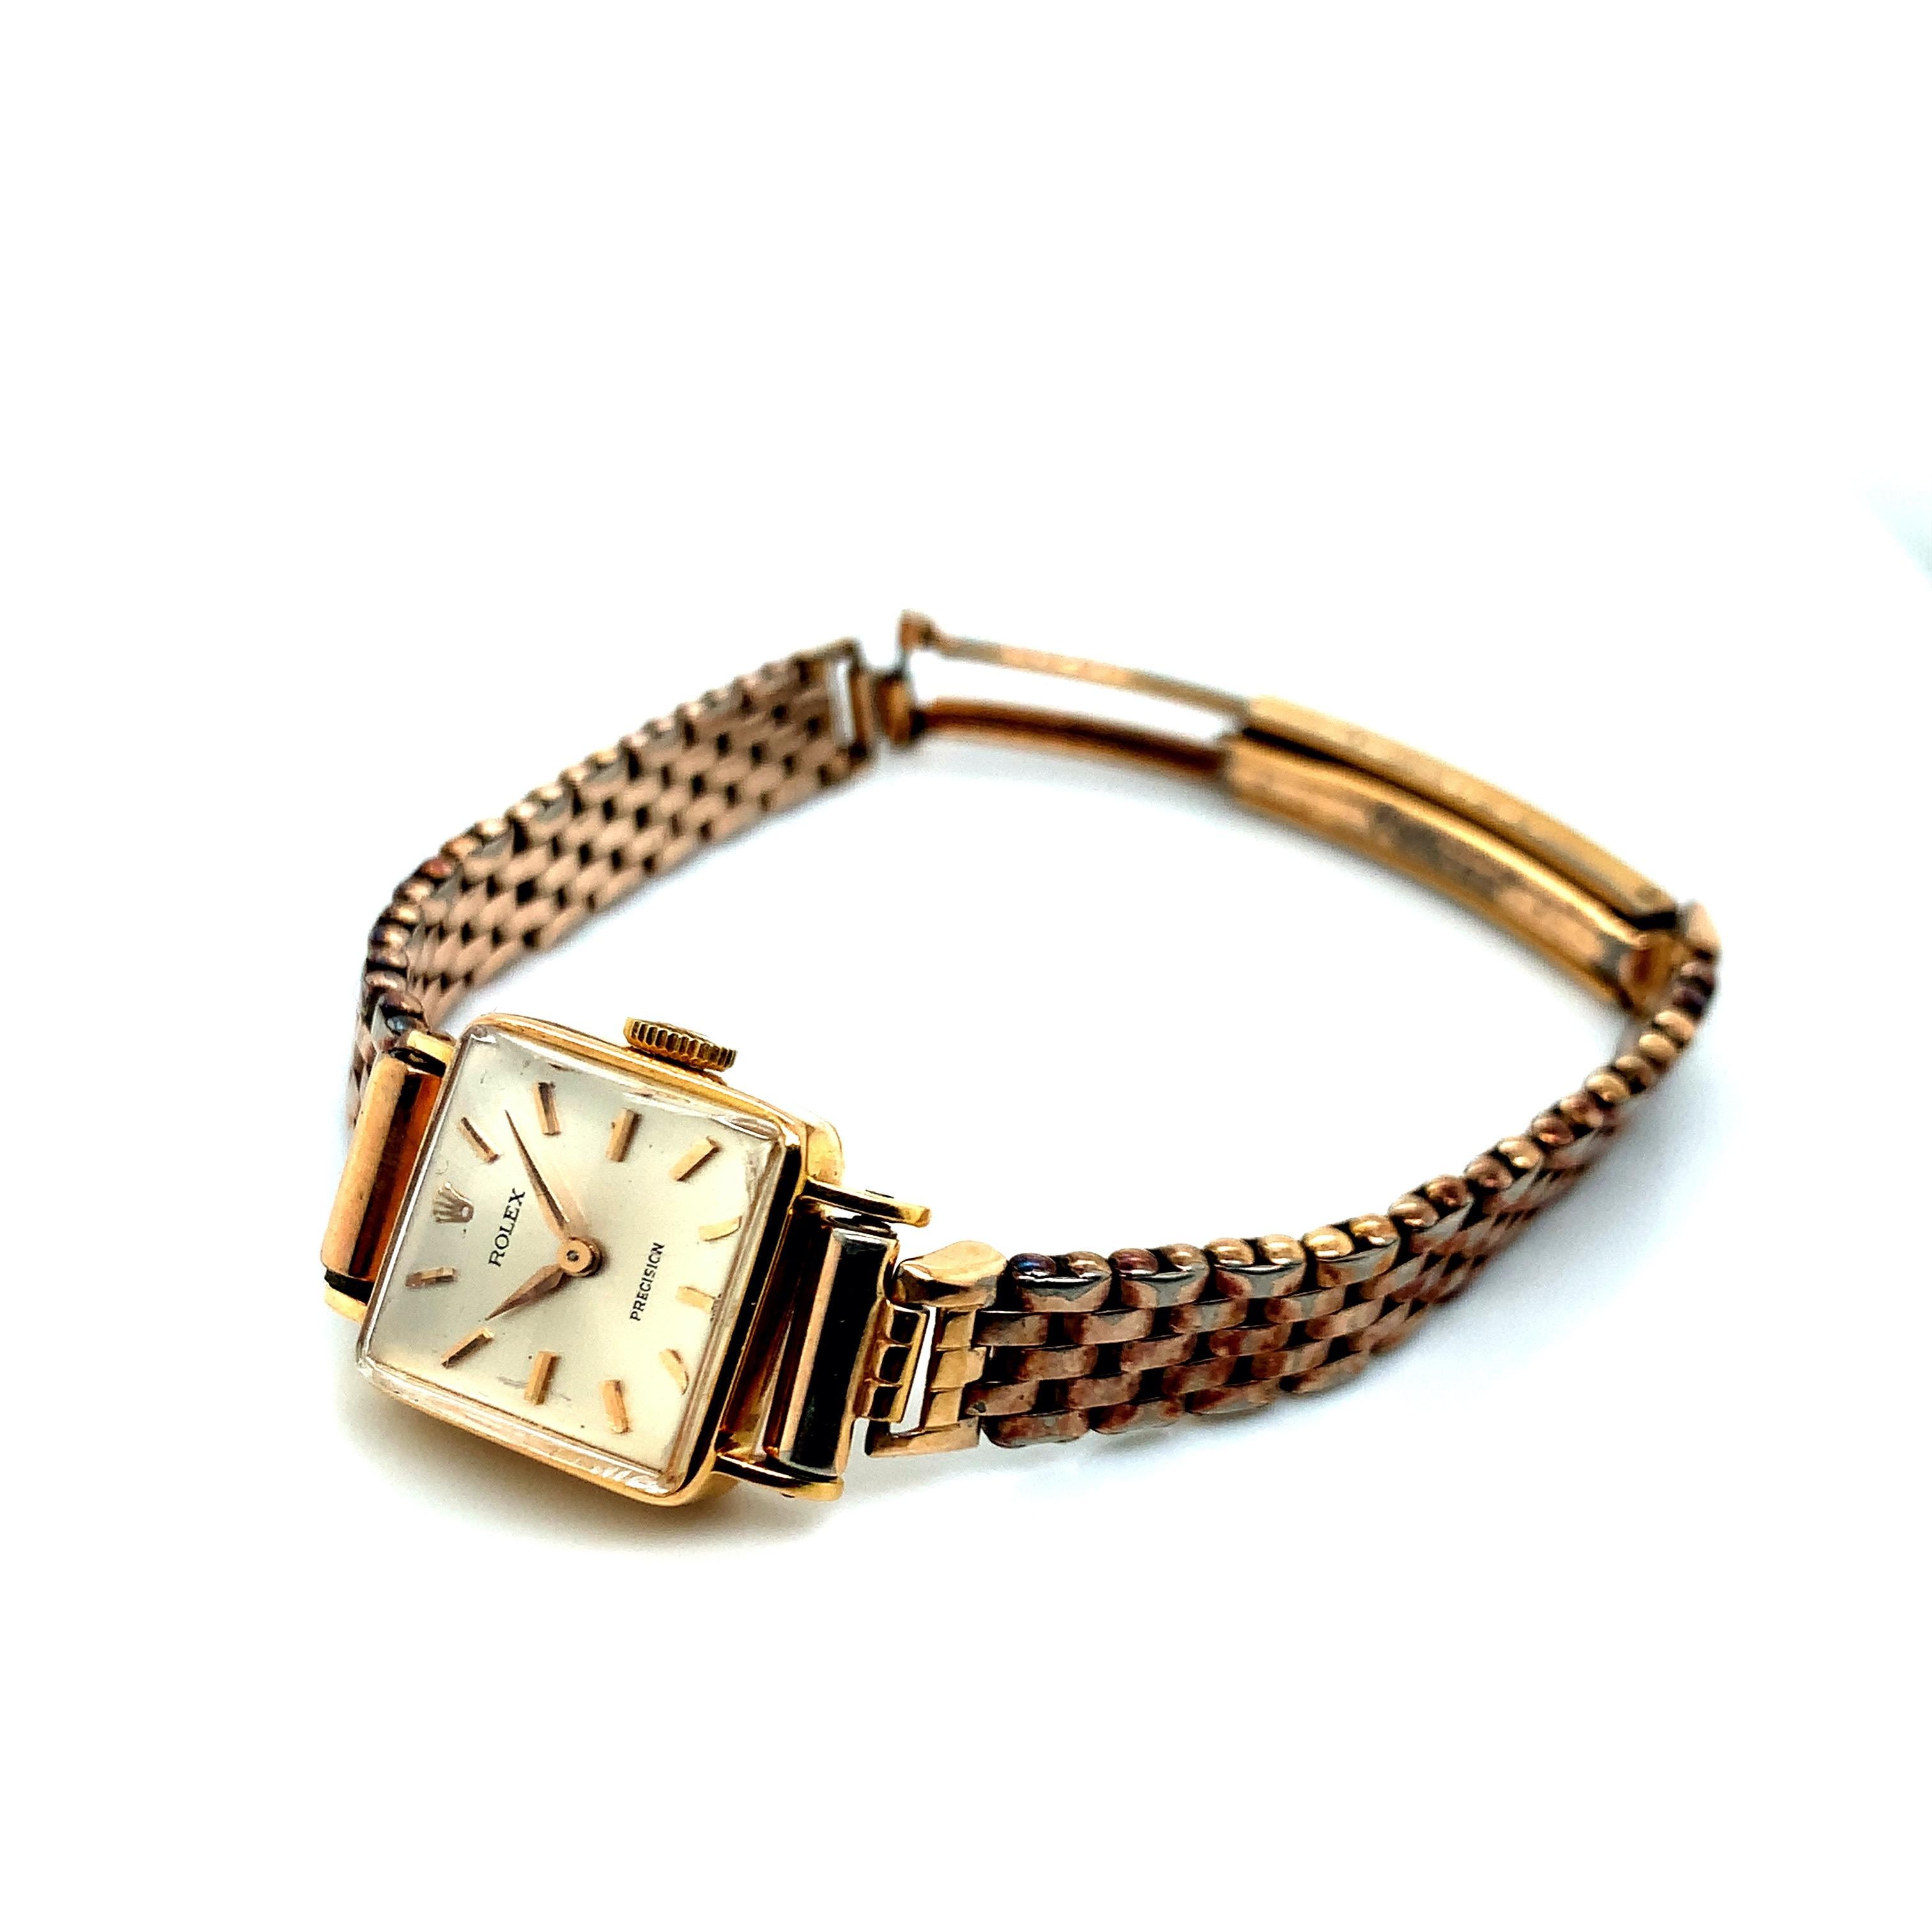 Créée par Rolex, la tête de cette montre-bracelet est en or 18 carats. Ses bracelets sont en or. Poids total : 23,4 grammes. Dimensions du boîtier : largeur : 1,7 cm, longueur : 1,7 cm. Numéro de série 457491.